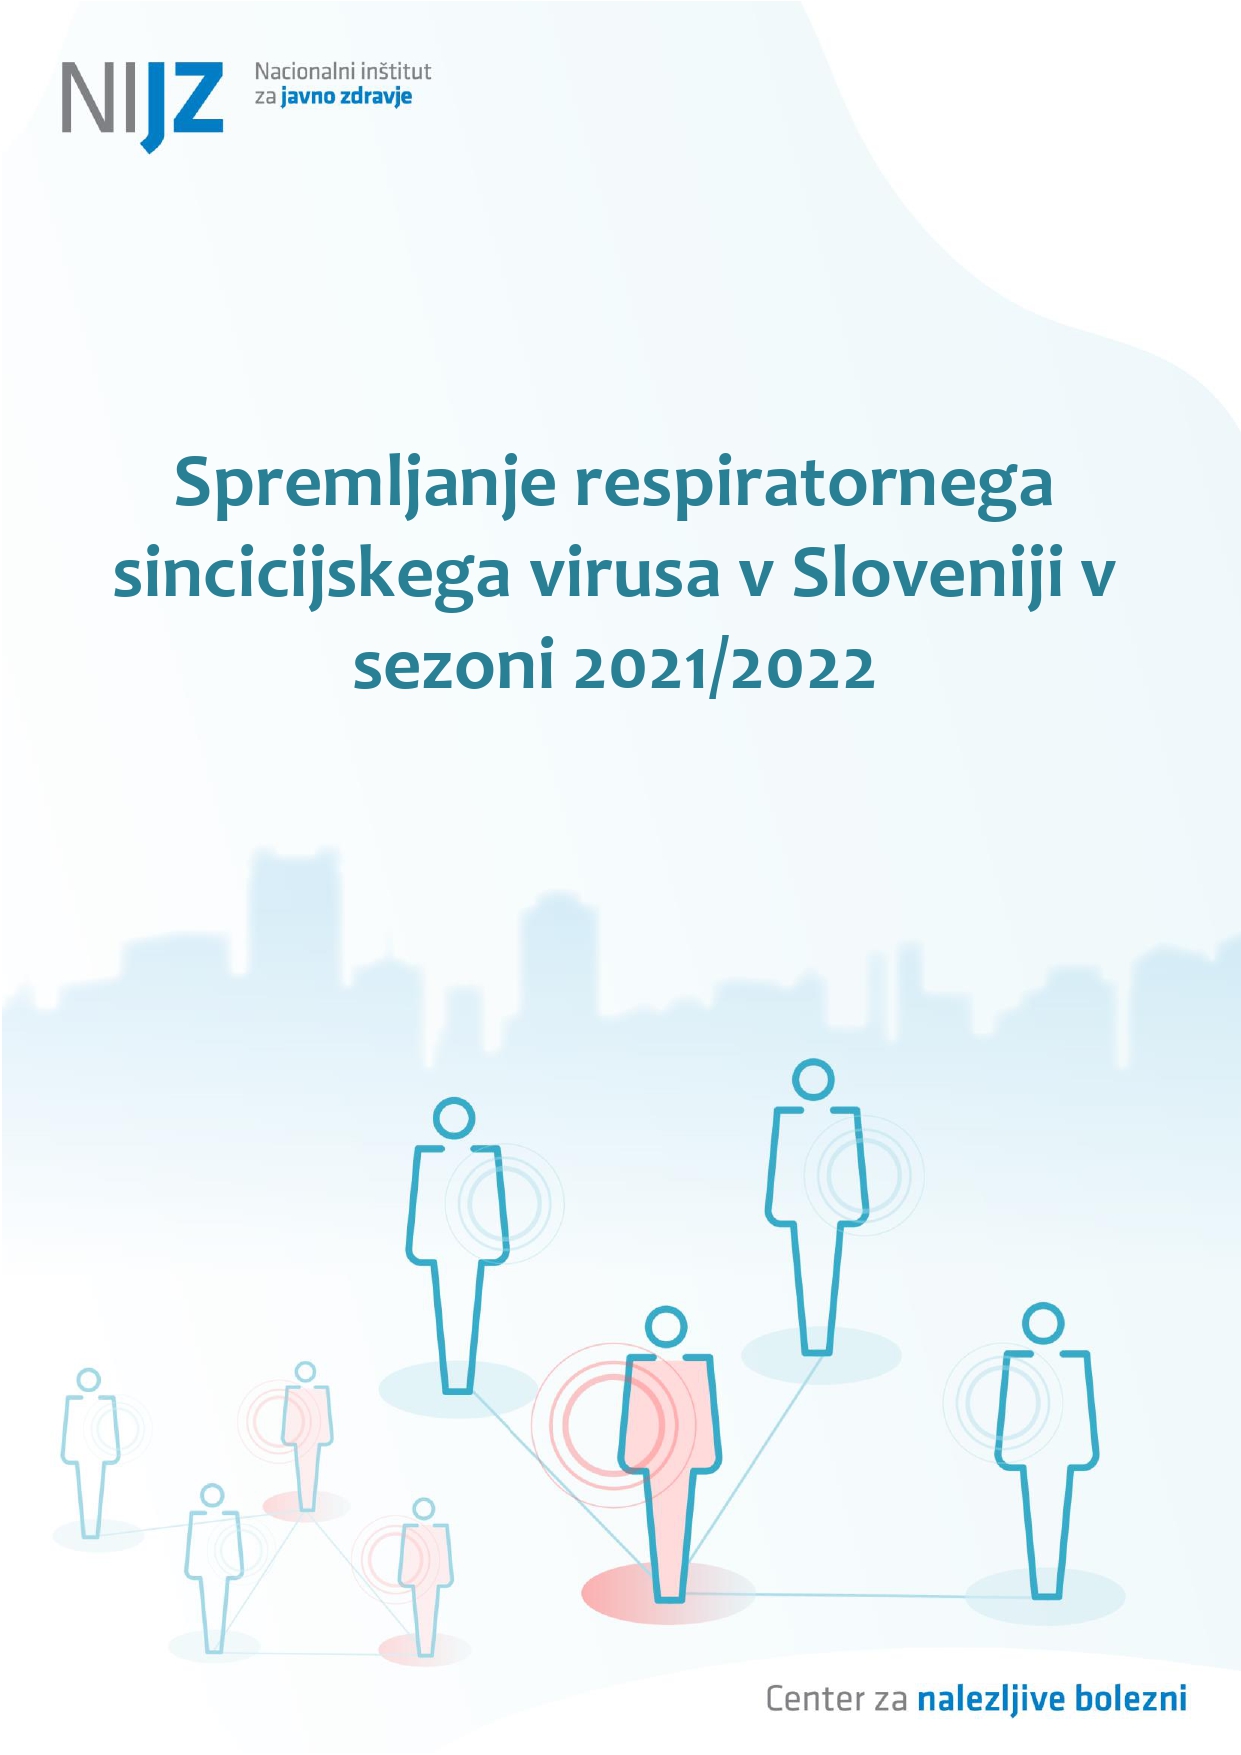 Spremljanje respiratornega sincicijskega virusa v Sloveniji v sezoni 2021/2022